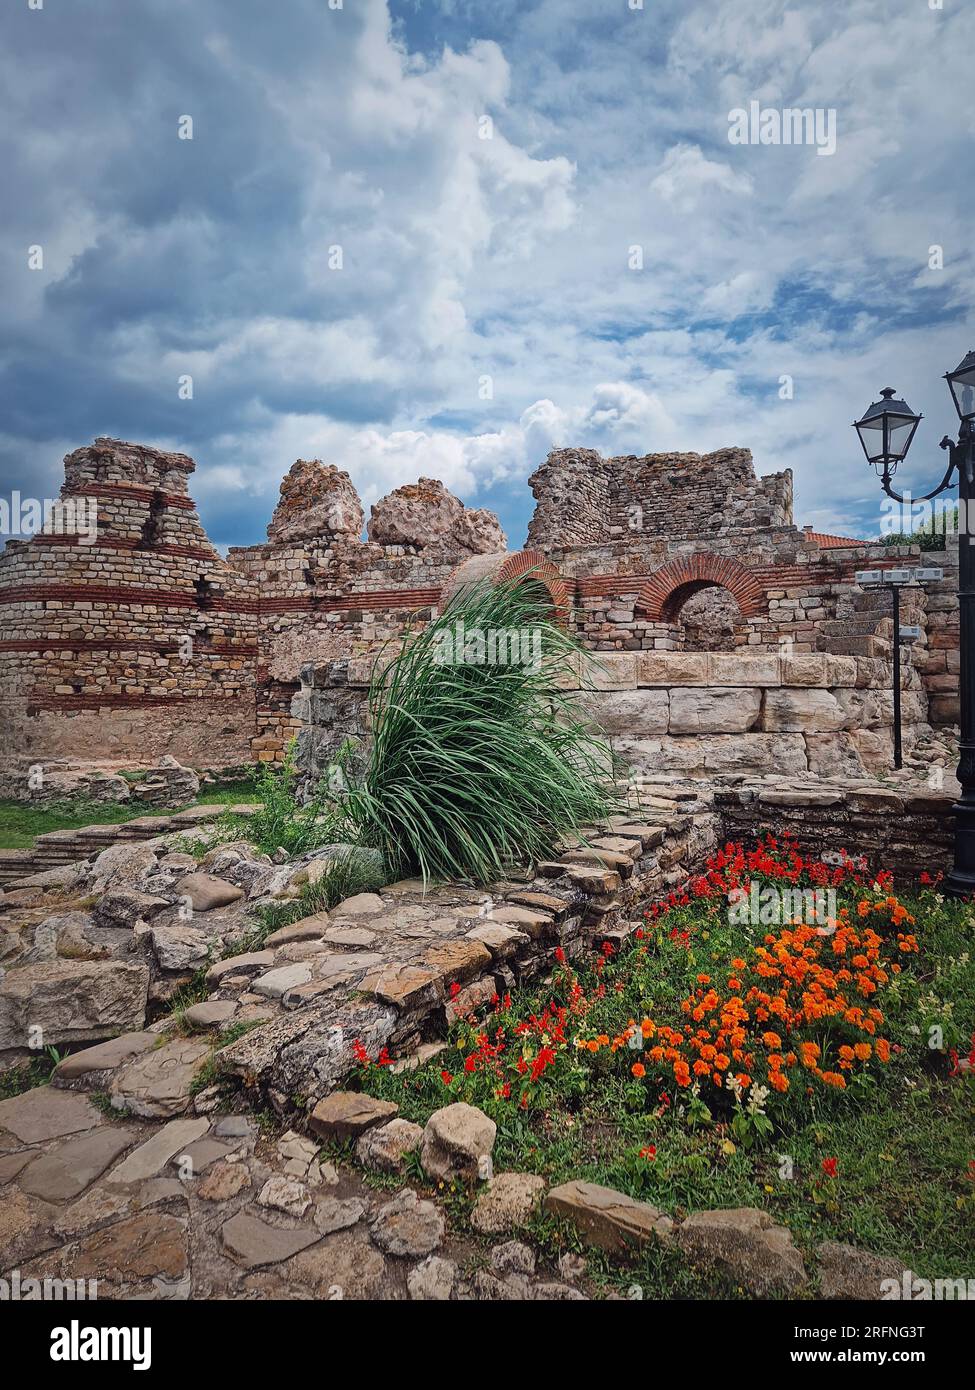 Rovine della fortezza bizantina dell'antico insediamento Tracico Mesembria. La città vecchia di Nessebar sulla costa del Mar Nero, patrimonio dell'umanità dell'UNESCO, Burgas Foto Stock